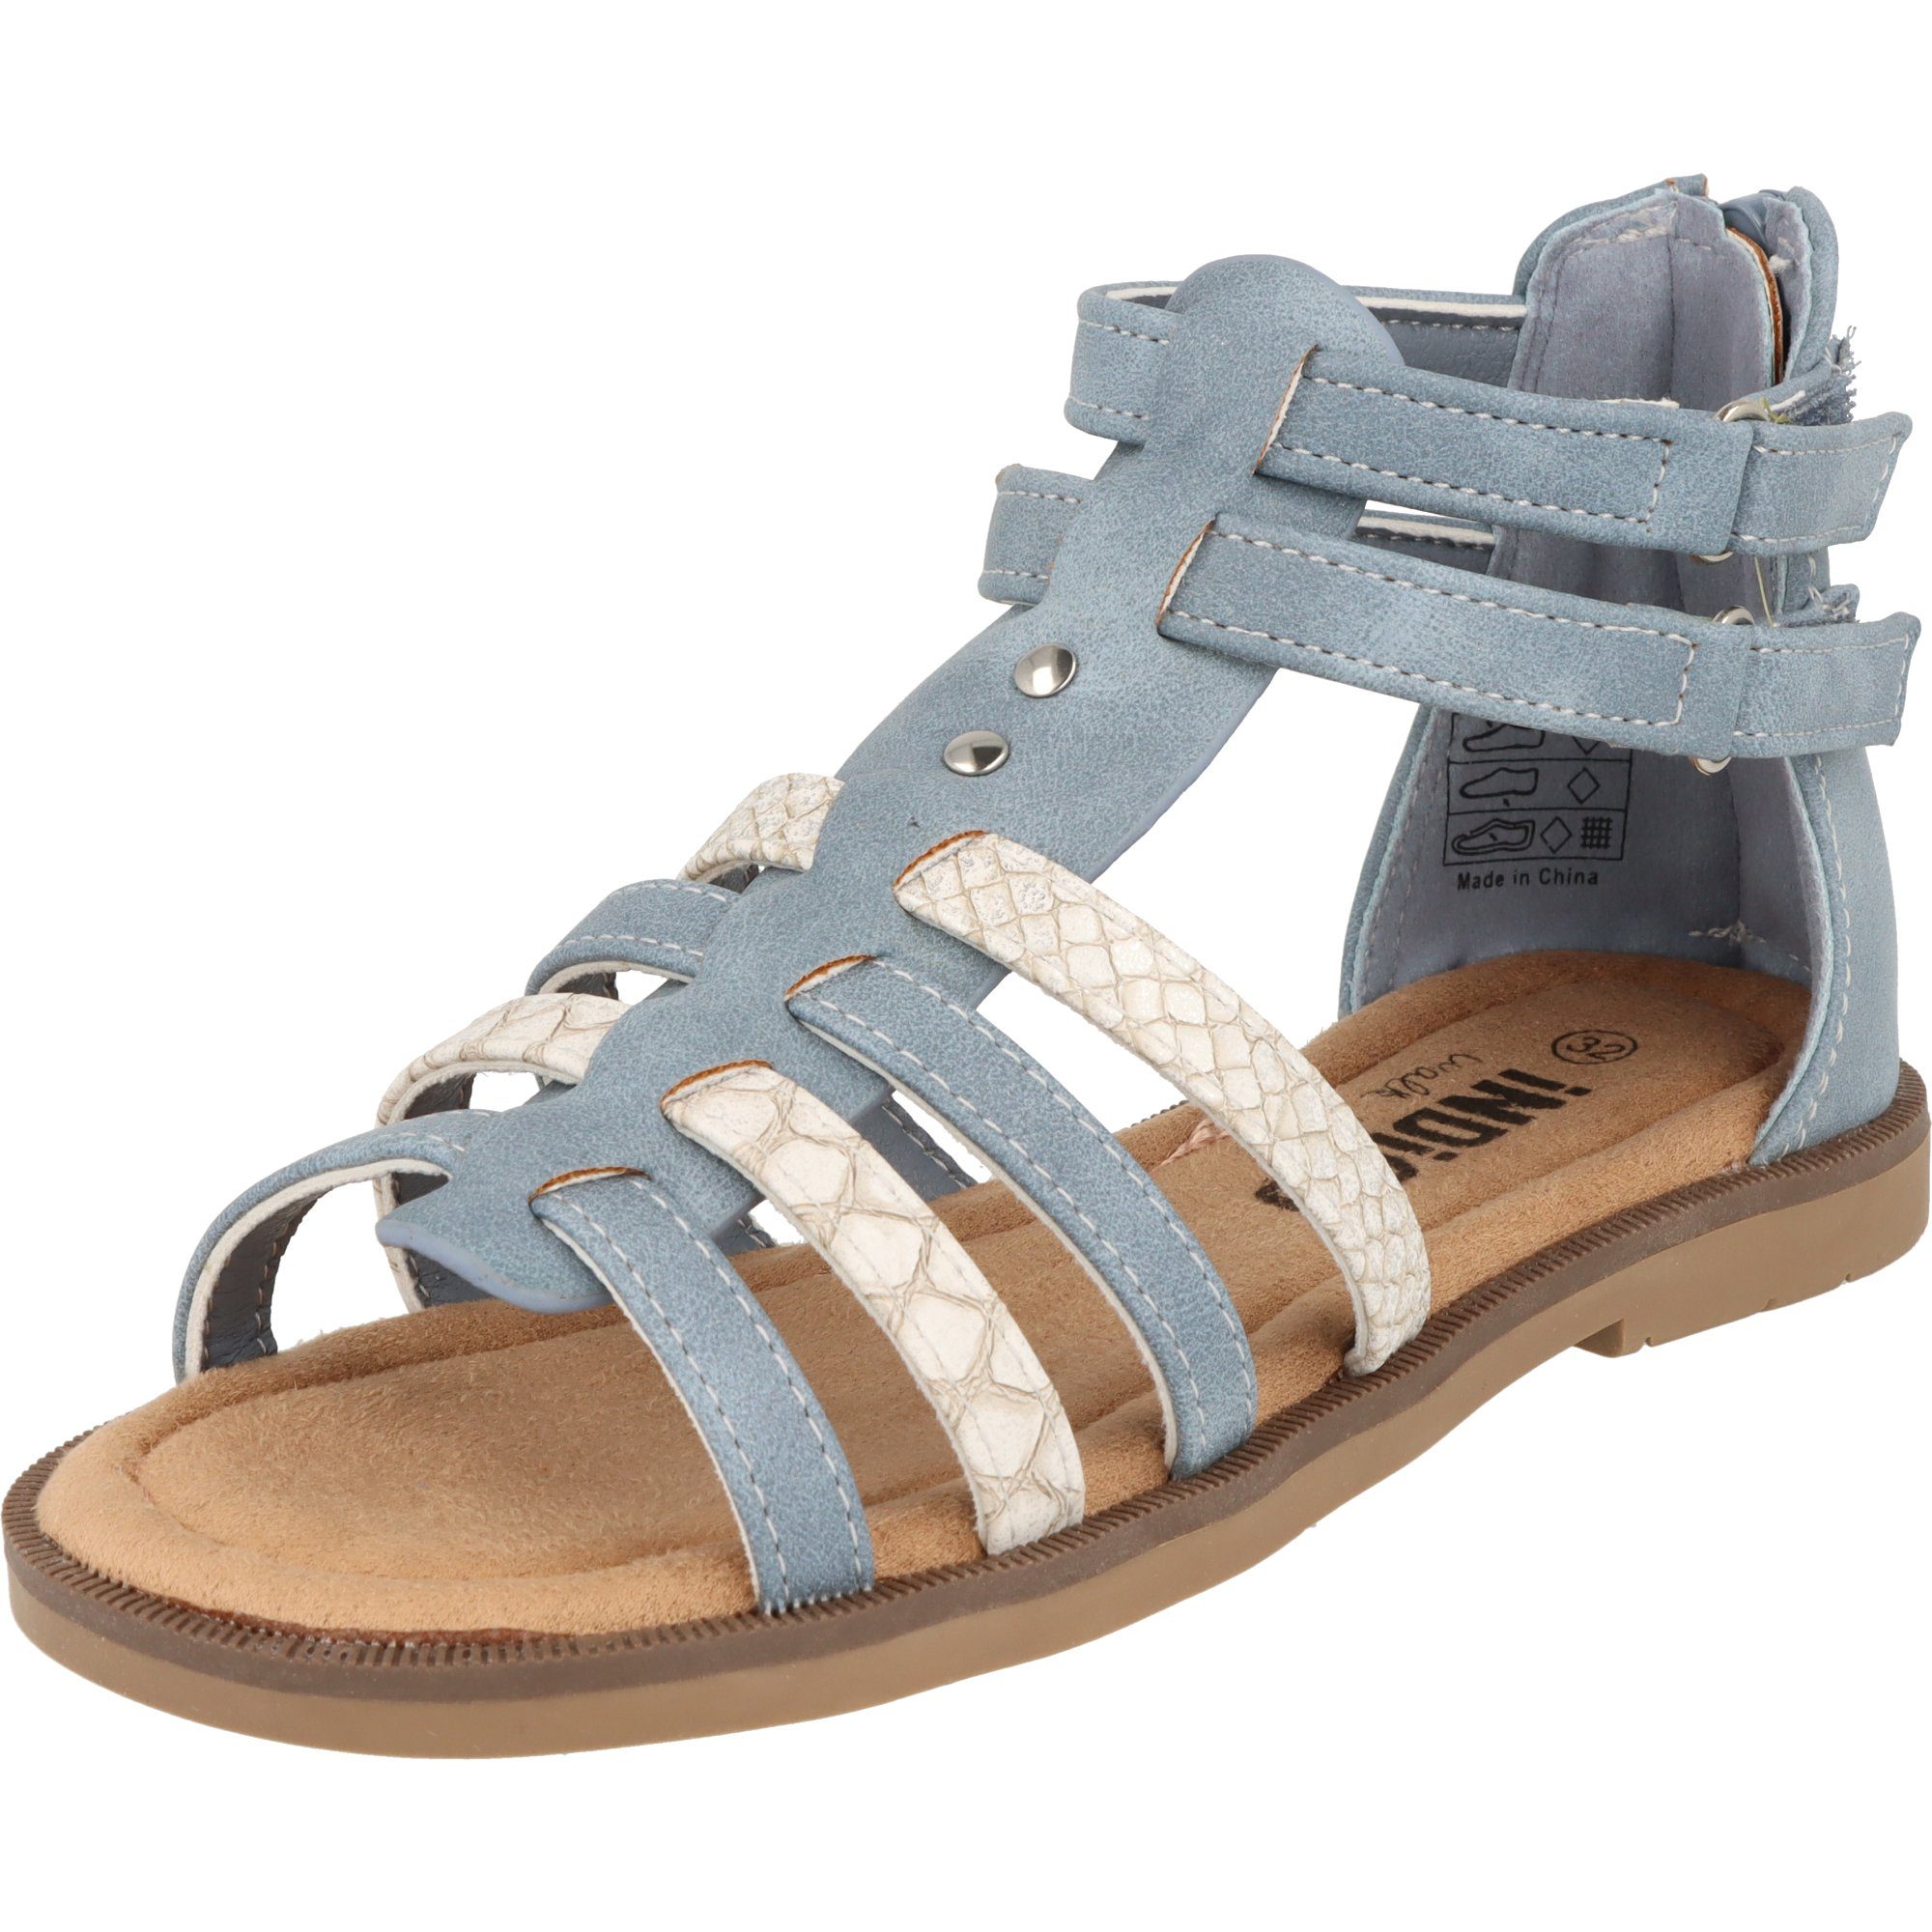 Sommer Schuhe 482-371 Sandale Blau Mädchen Klett Indigo Freizeit Römersandale Kinder